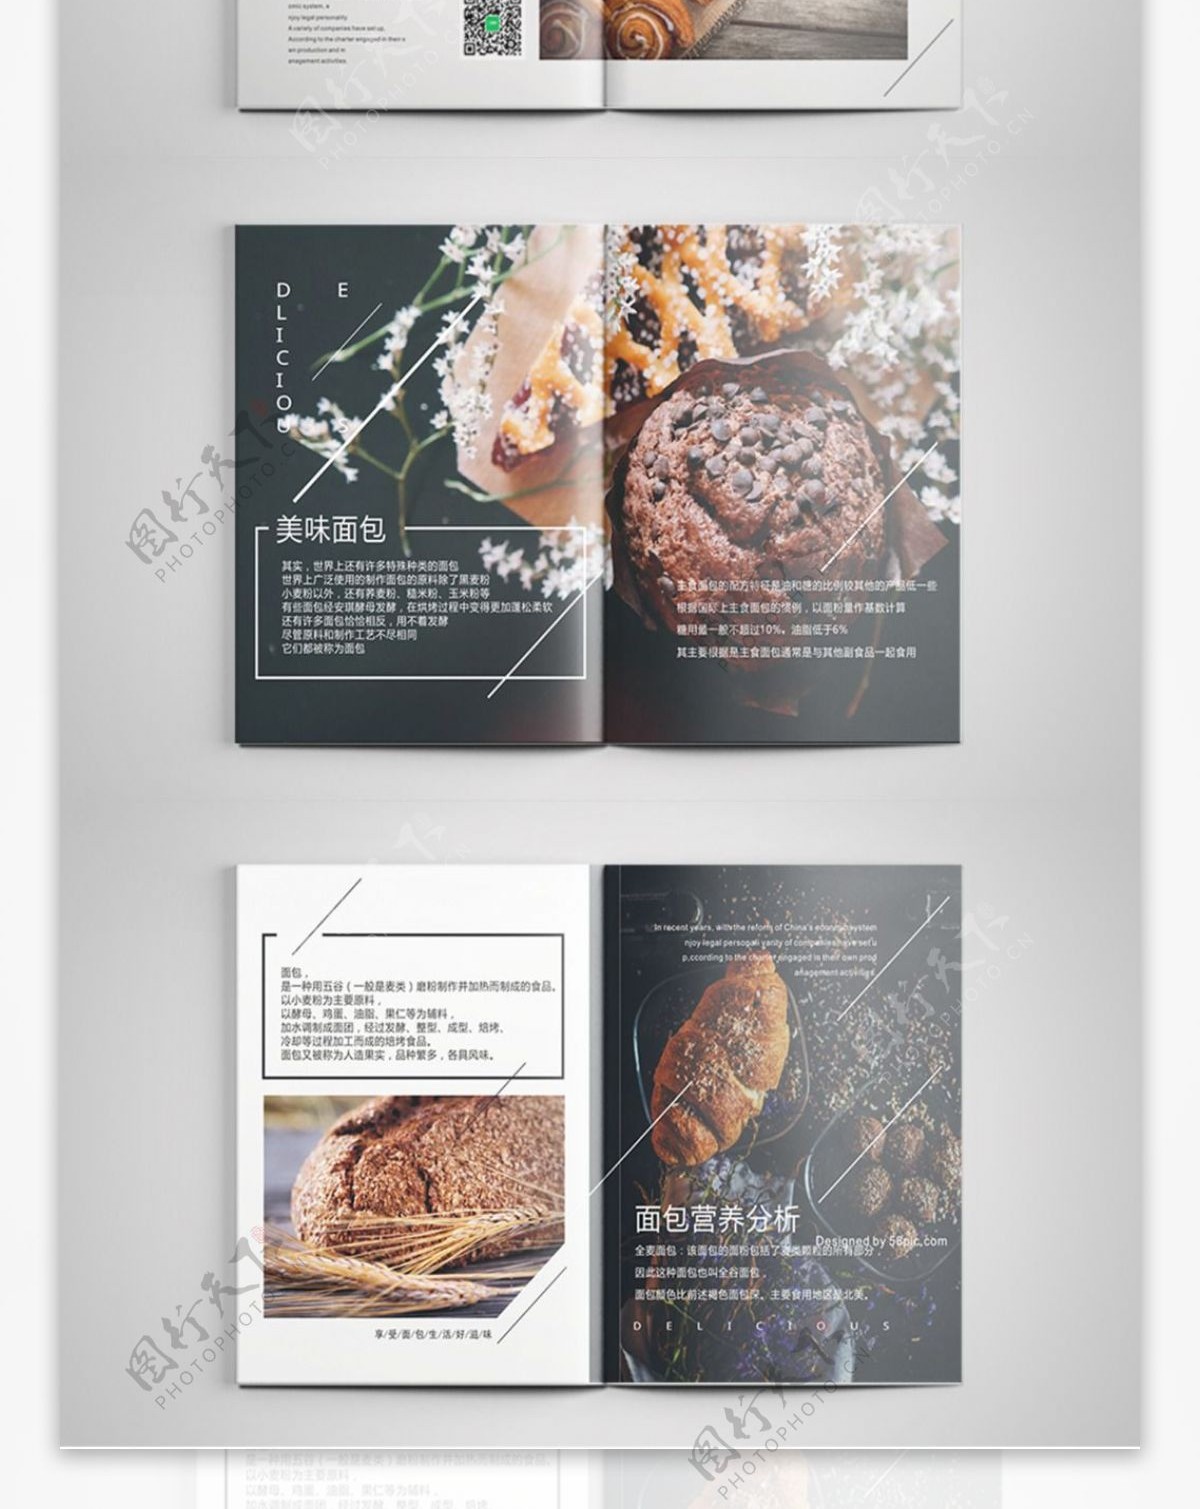 时尚大气面包甜品美食画册